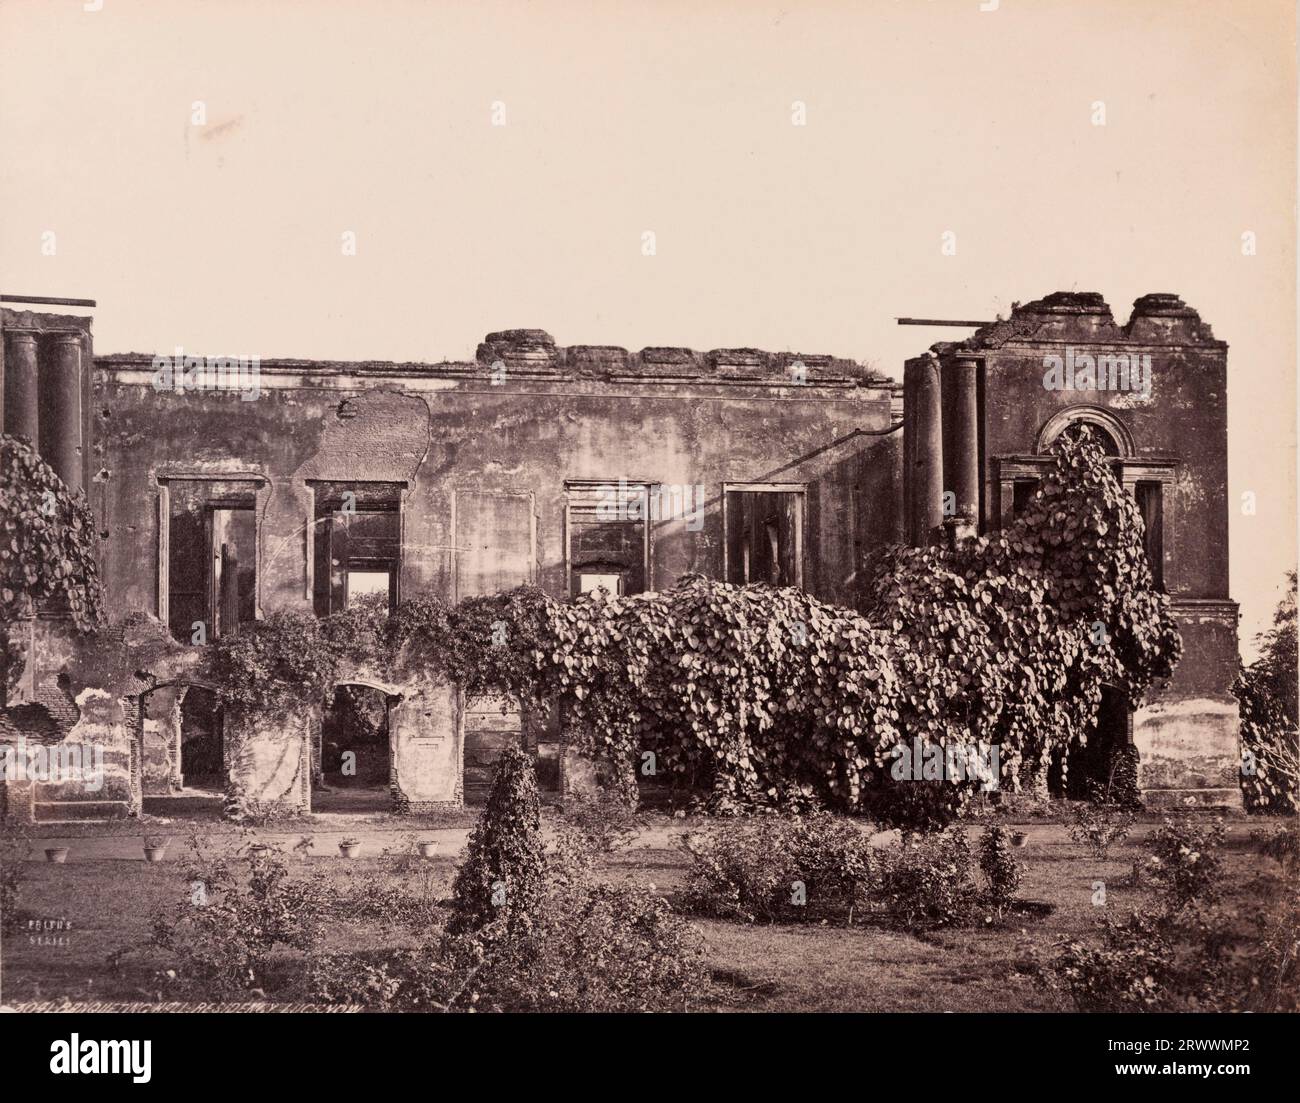 Aus nächster Nähe sehen Sie die Ruinen der mit Pflanzen bewachsenen British Residency Banqueting Hall. Sie wurde während der indischen Rebellion von 1857 ruiniert. Topf-Pflanzen säumen den Weg und Rasen vor dem Gebäude. Auf negativ eingeschrieben: Frith's Series. 3041 Bankettsaal, Residency, Lucknow. Die Bildunterschrift lautet: Lucknow Residency, Bankettsaal. Stockfoto